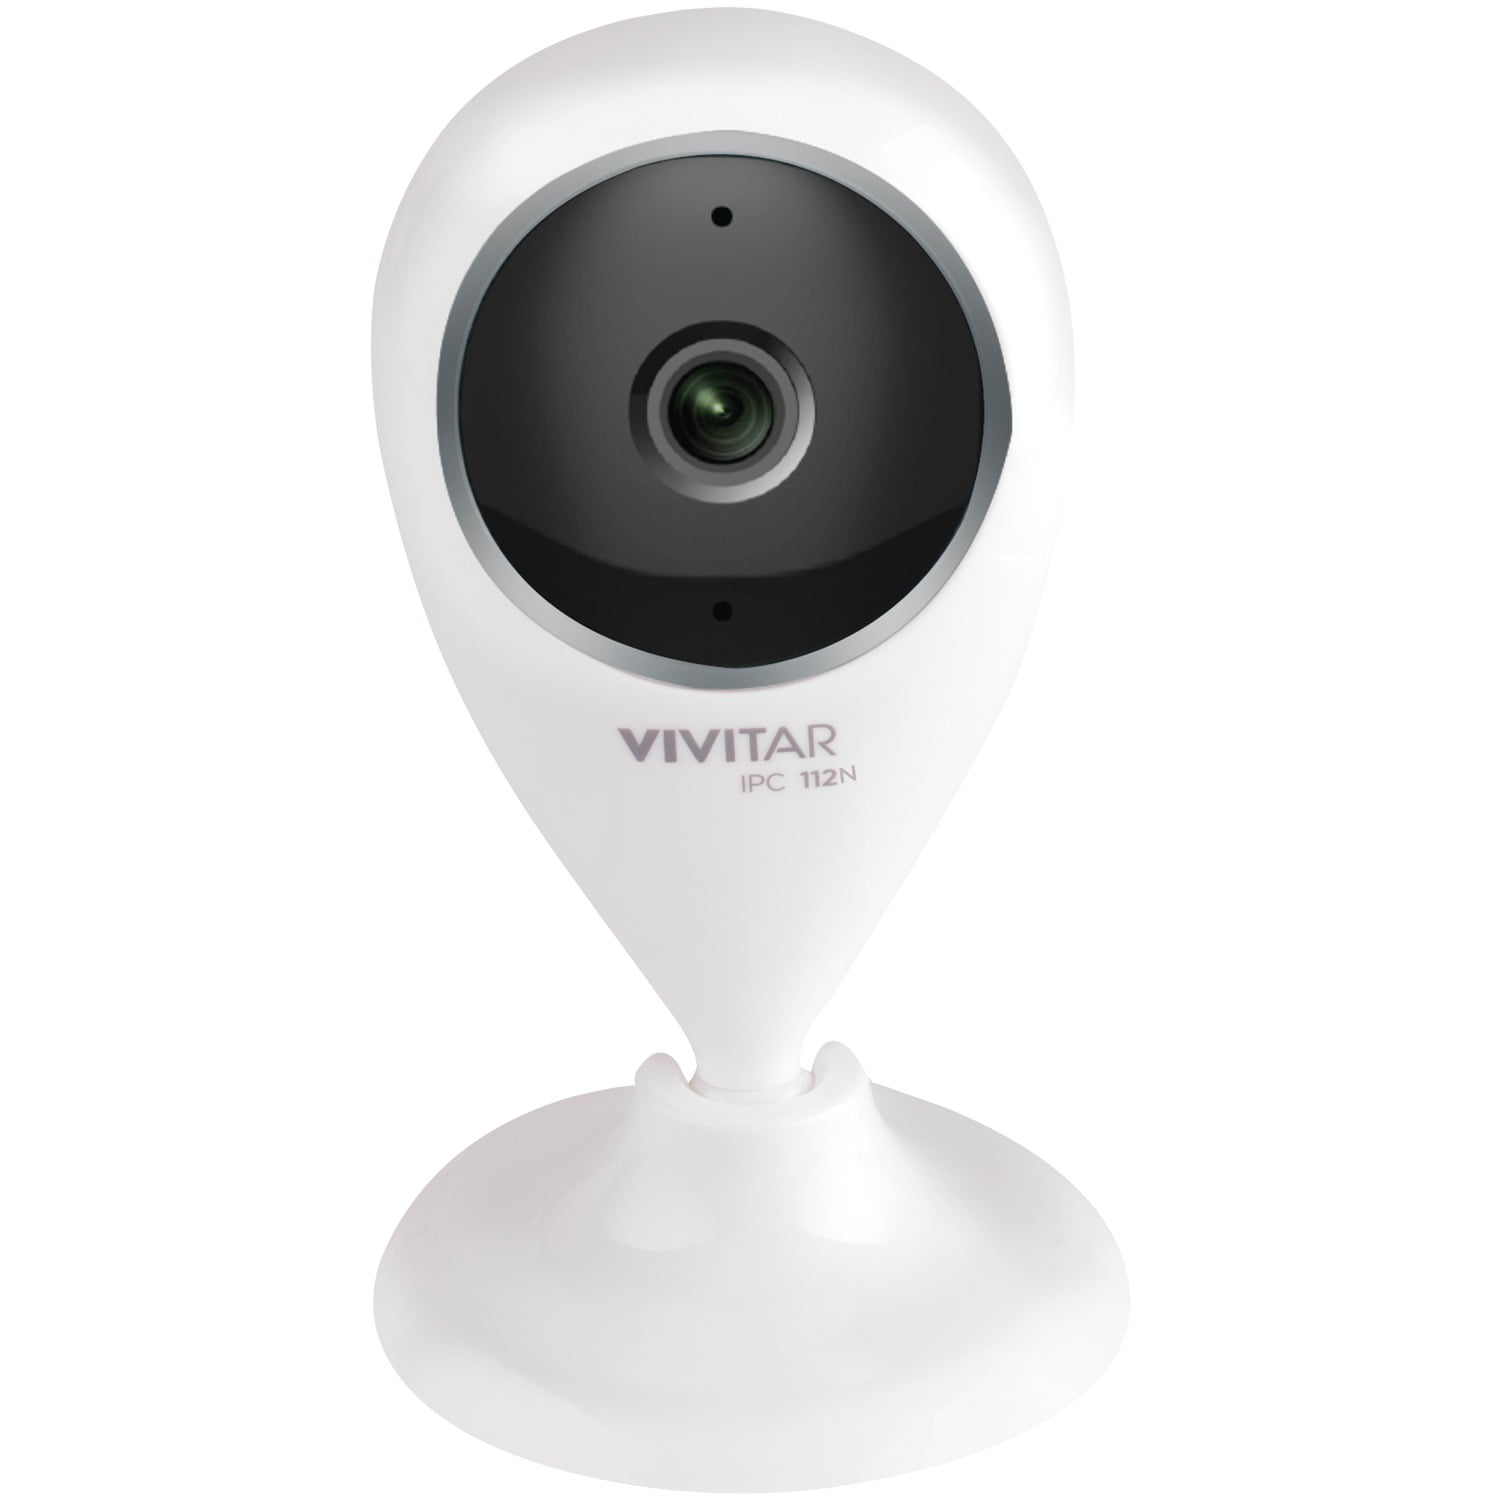 vivitar smart home capture cam